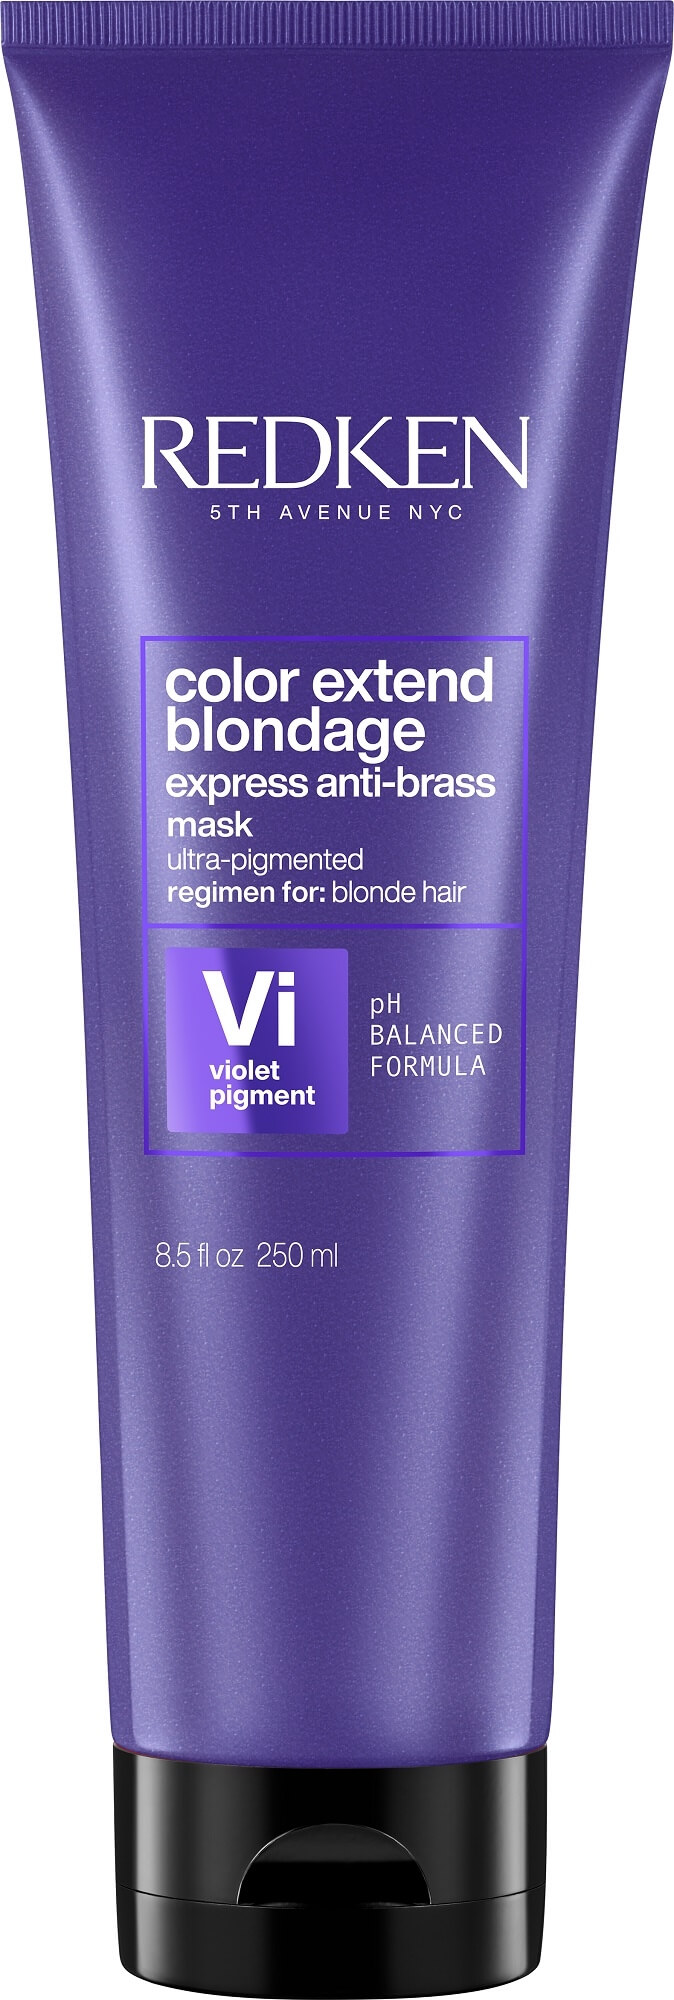 Redken Maska neutralizující žluté tóny vlasů Color Extend Blondage (Express Anti-brass Purple Mask) 250 ml